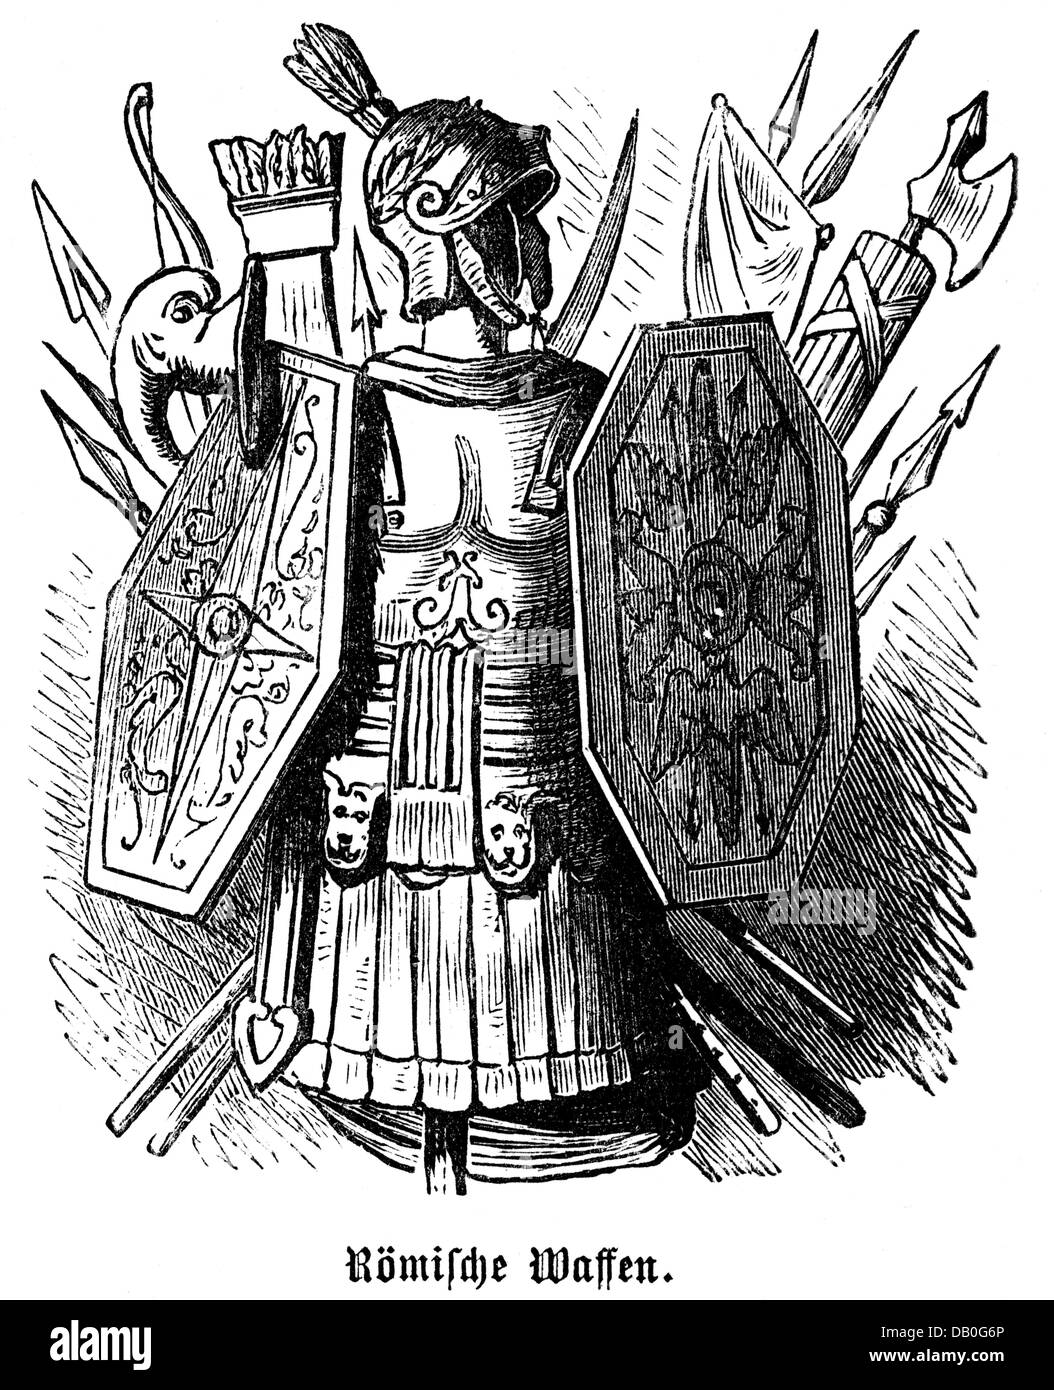 Armes, monde antique, armes romaines, gravure de bois, 1872, droits additionnels-Clearences-non disponible Banque D'Images